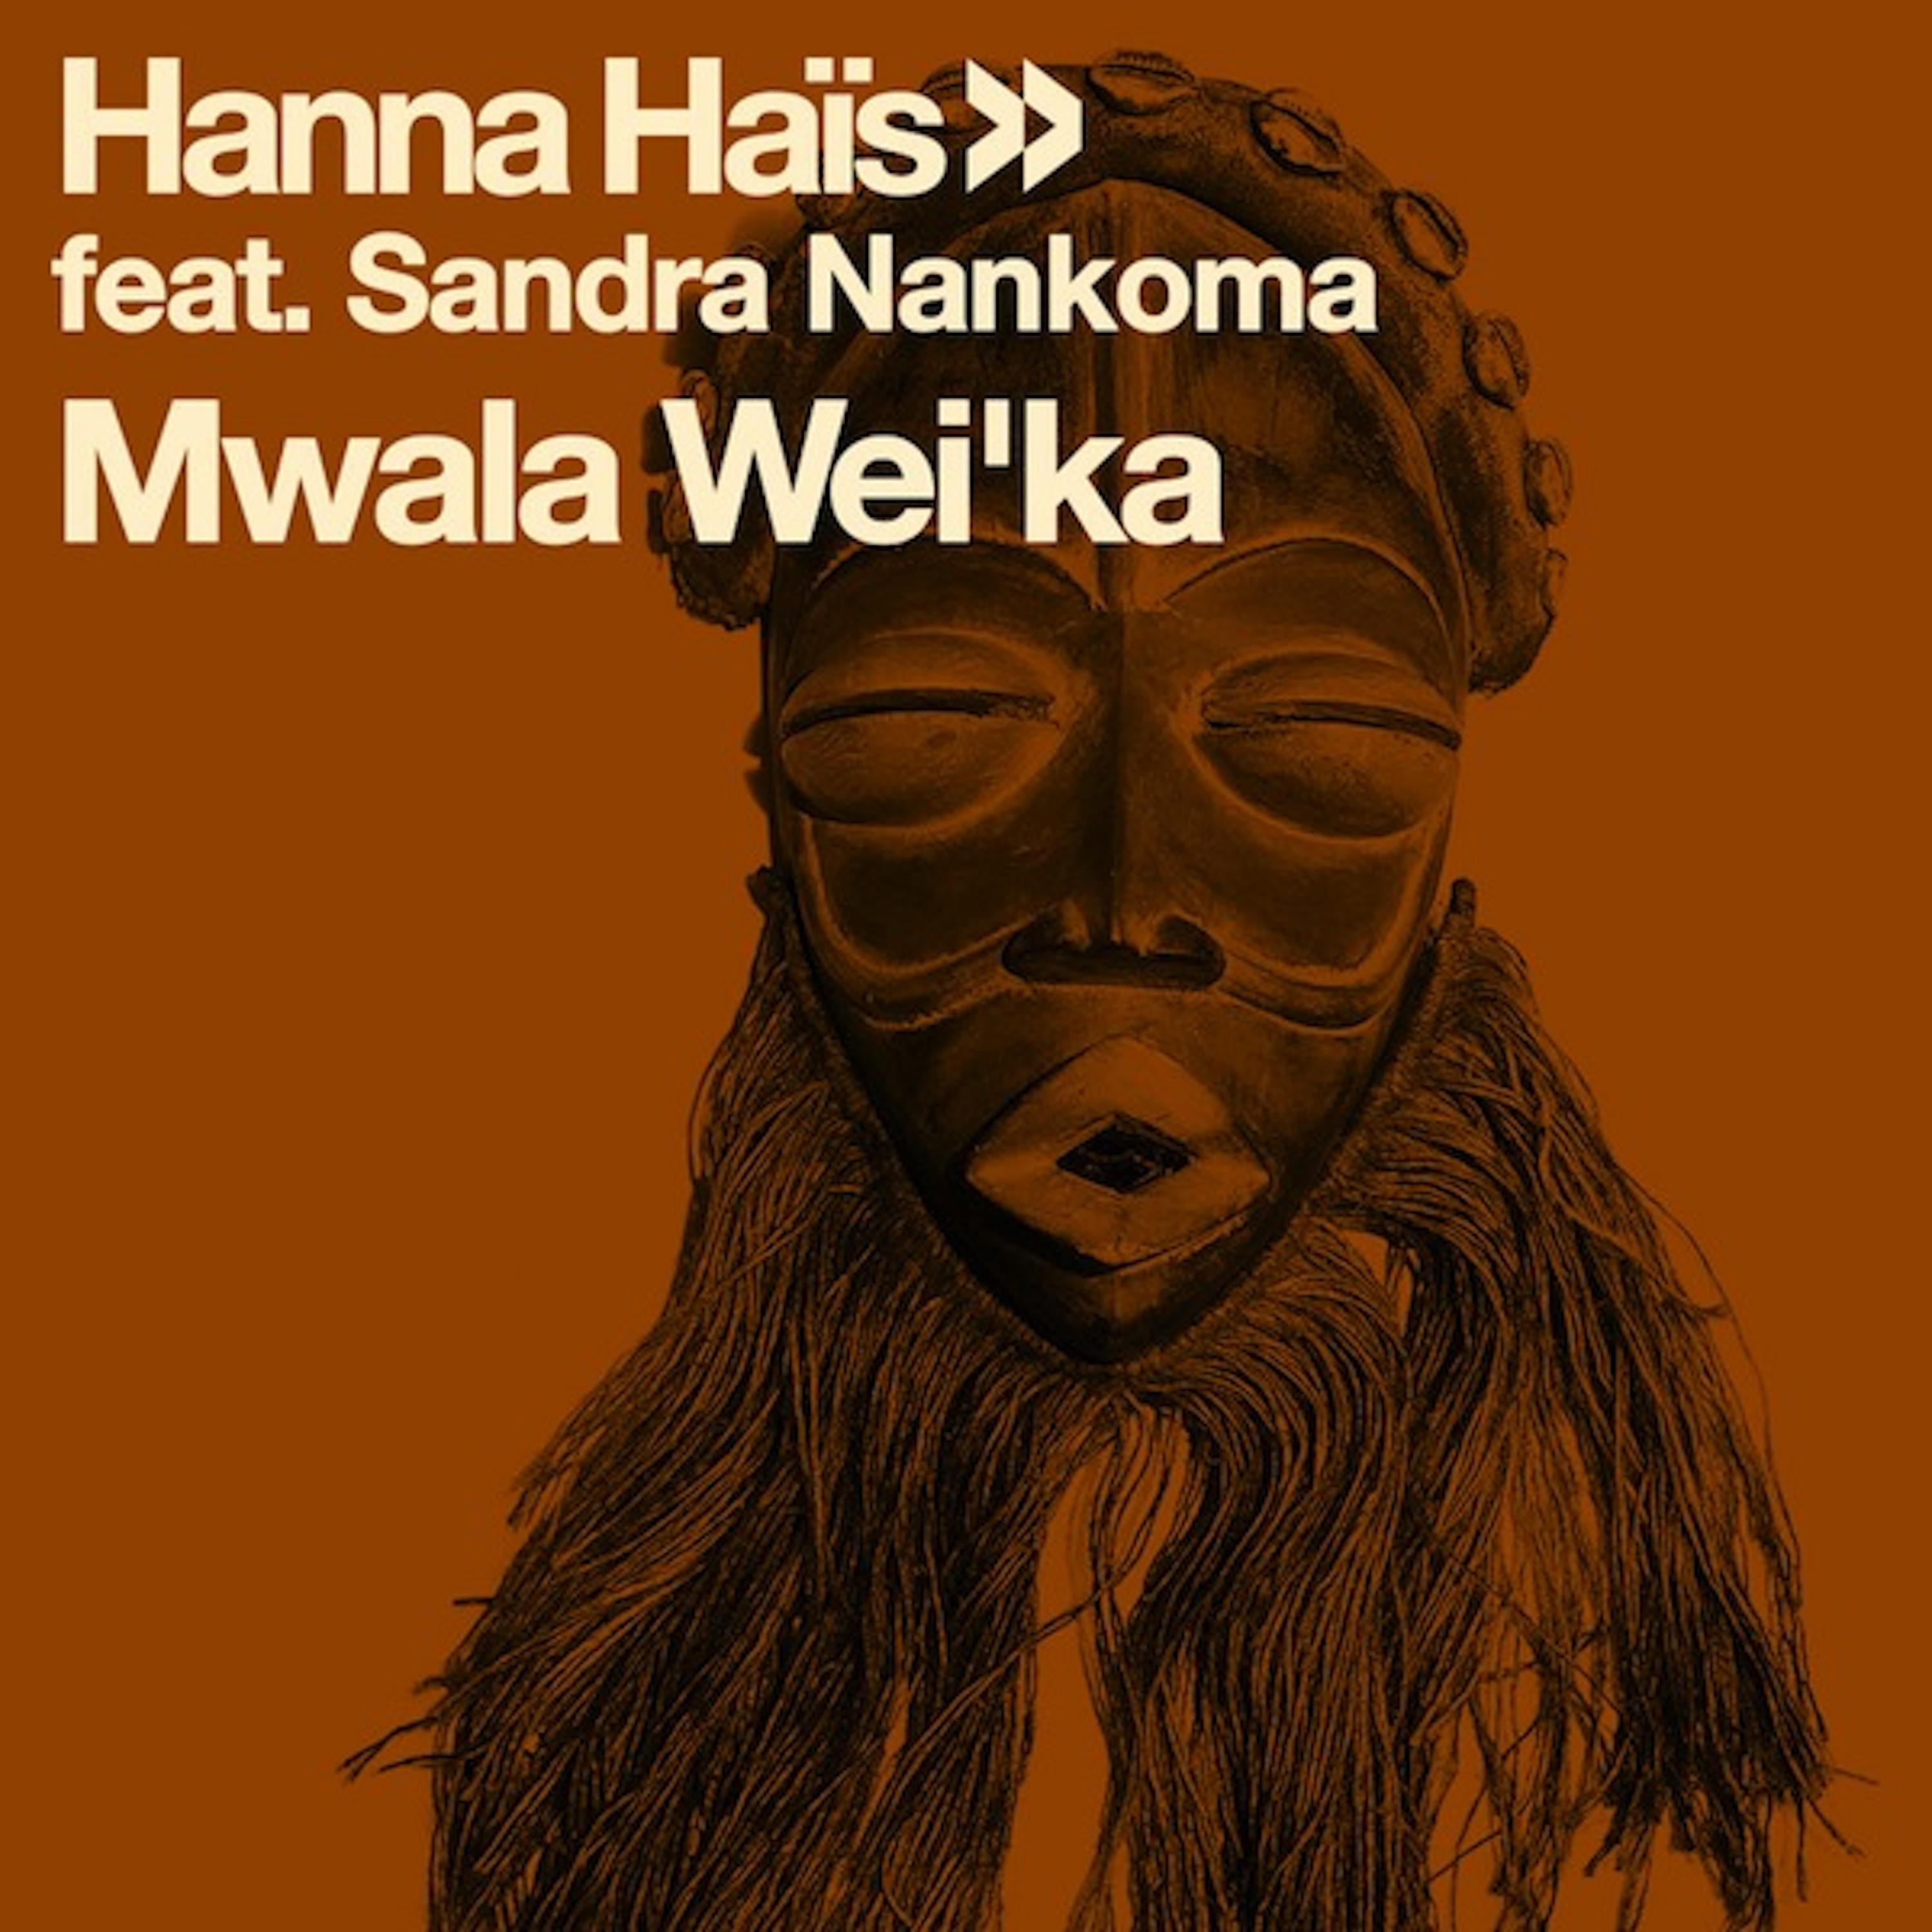 Mwala Wei'ka